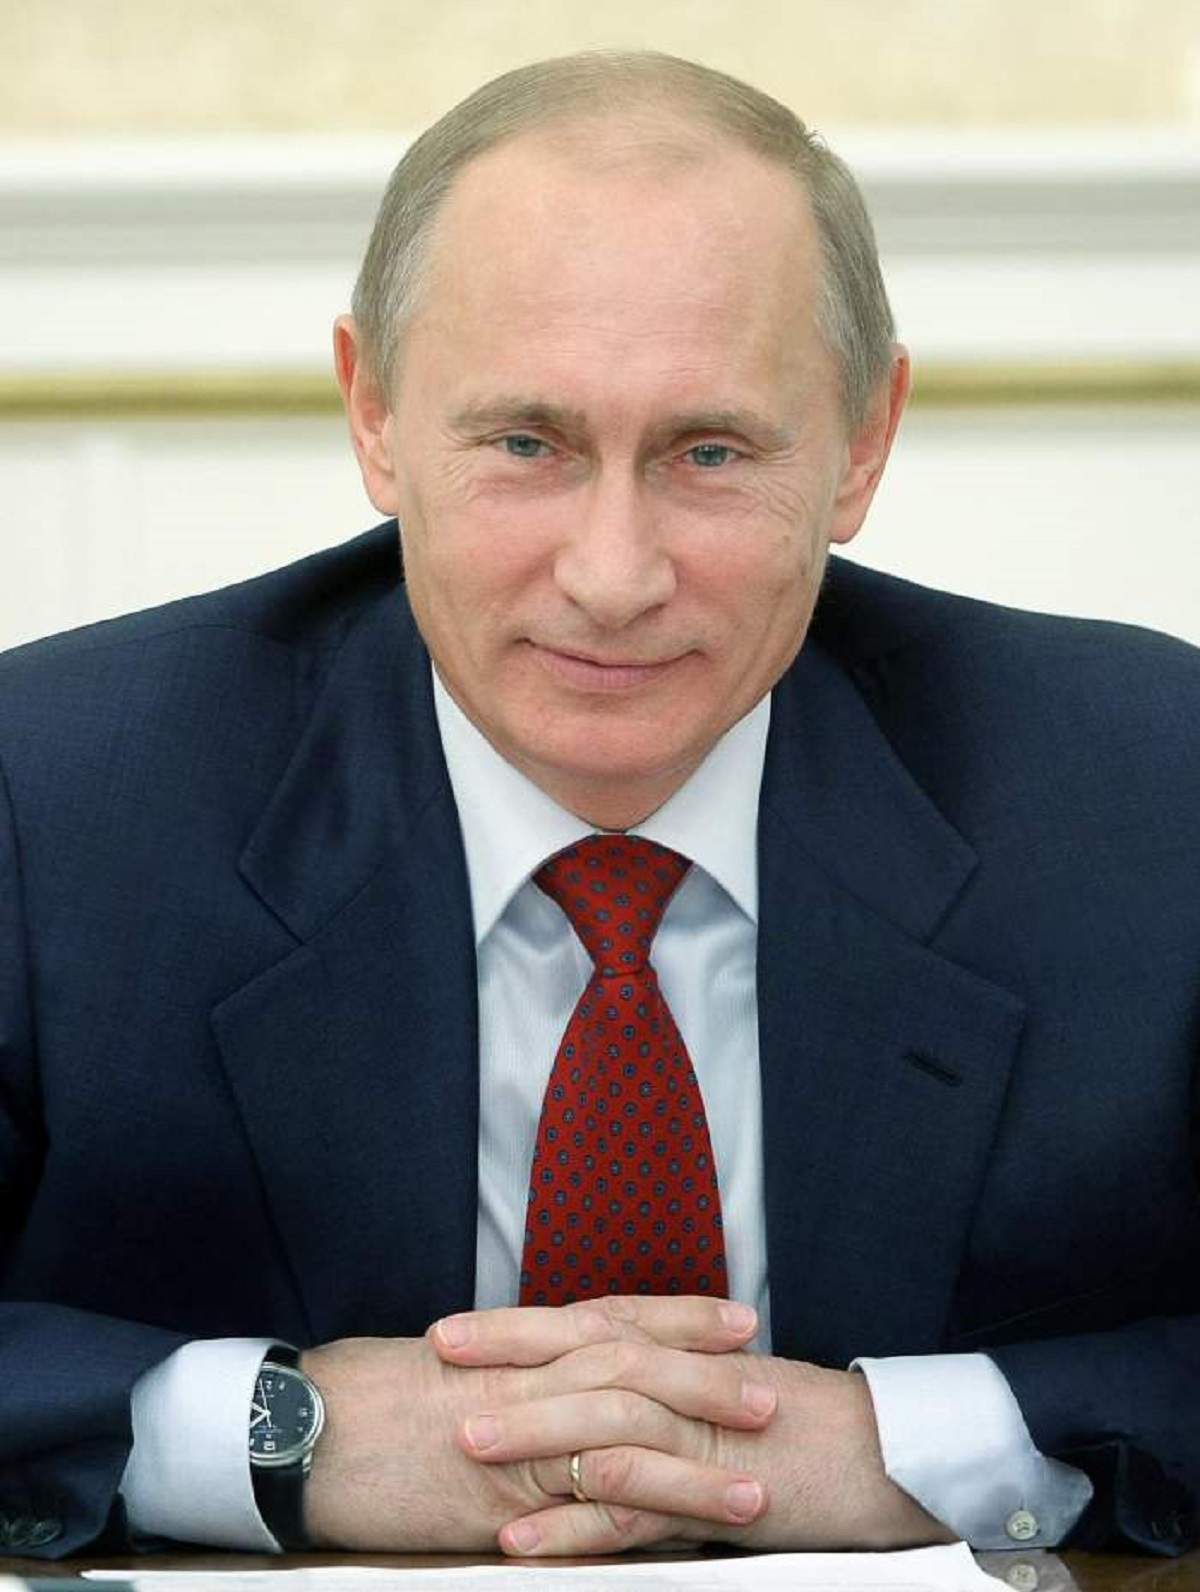 Vladimir Putin intr-o conferinta, poarta costum cu cravata rosie